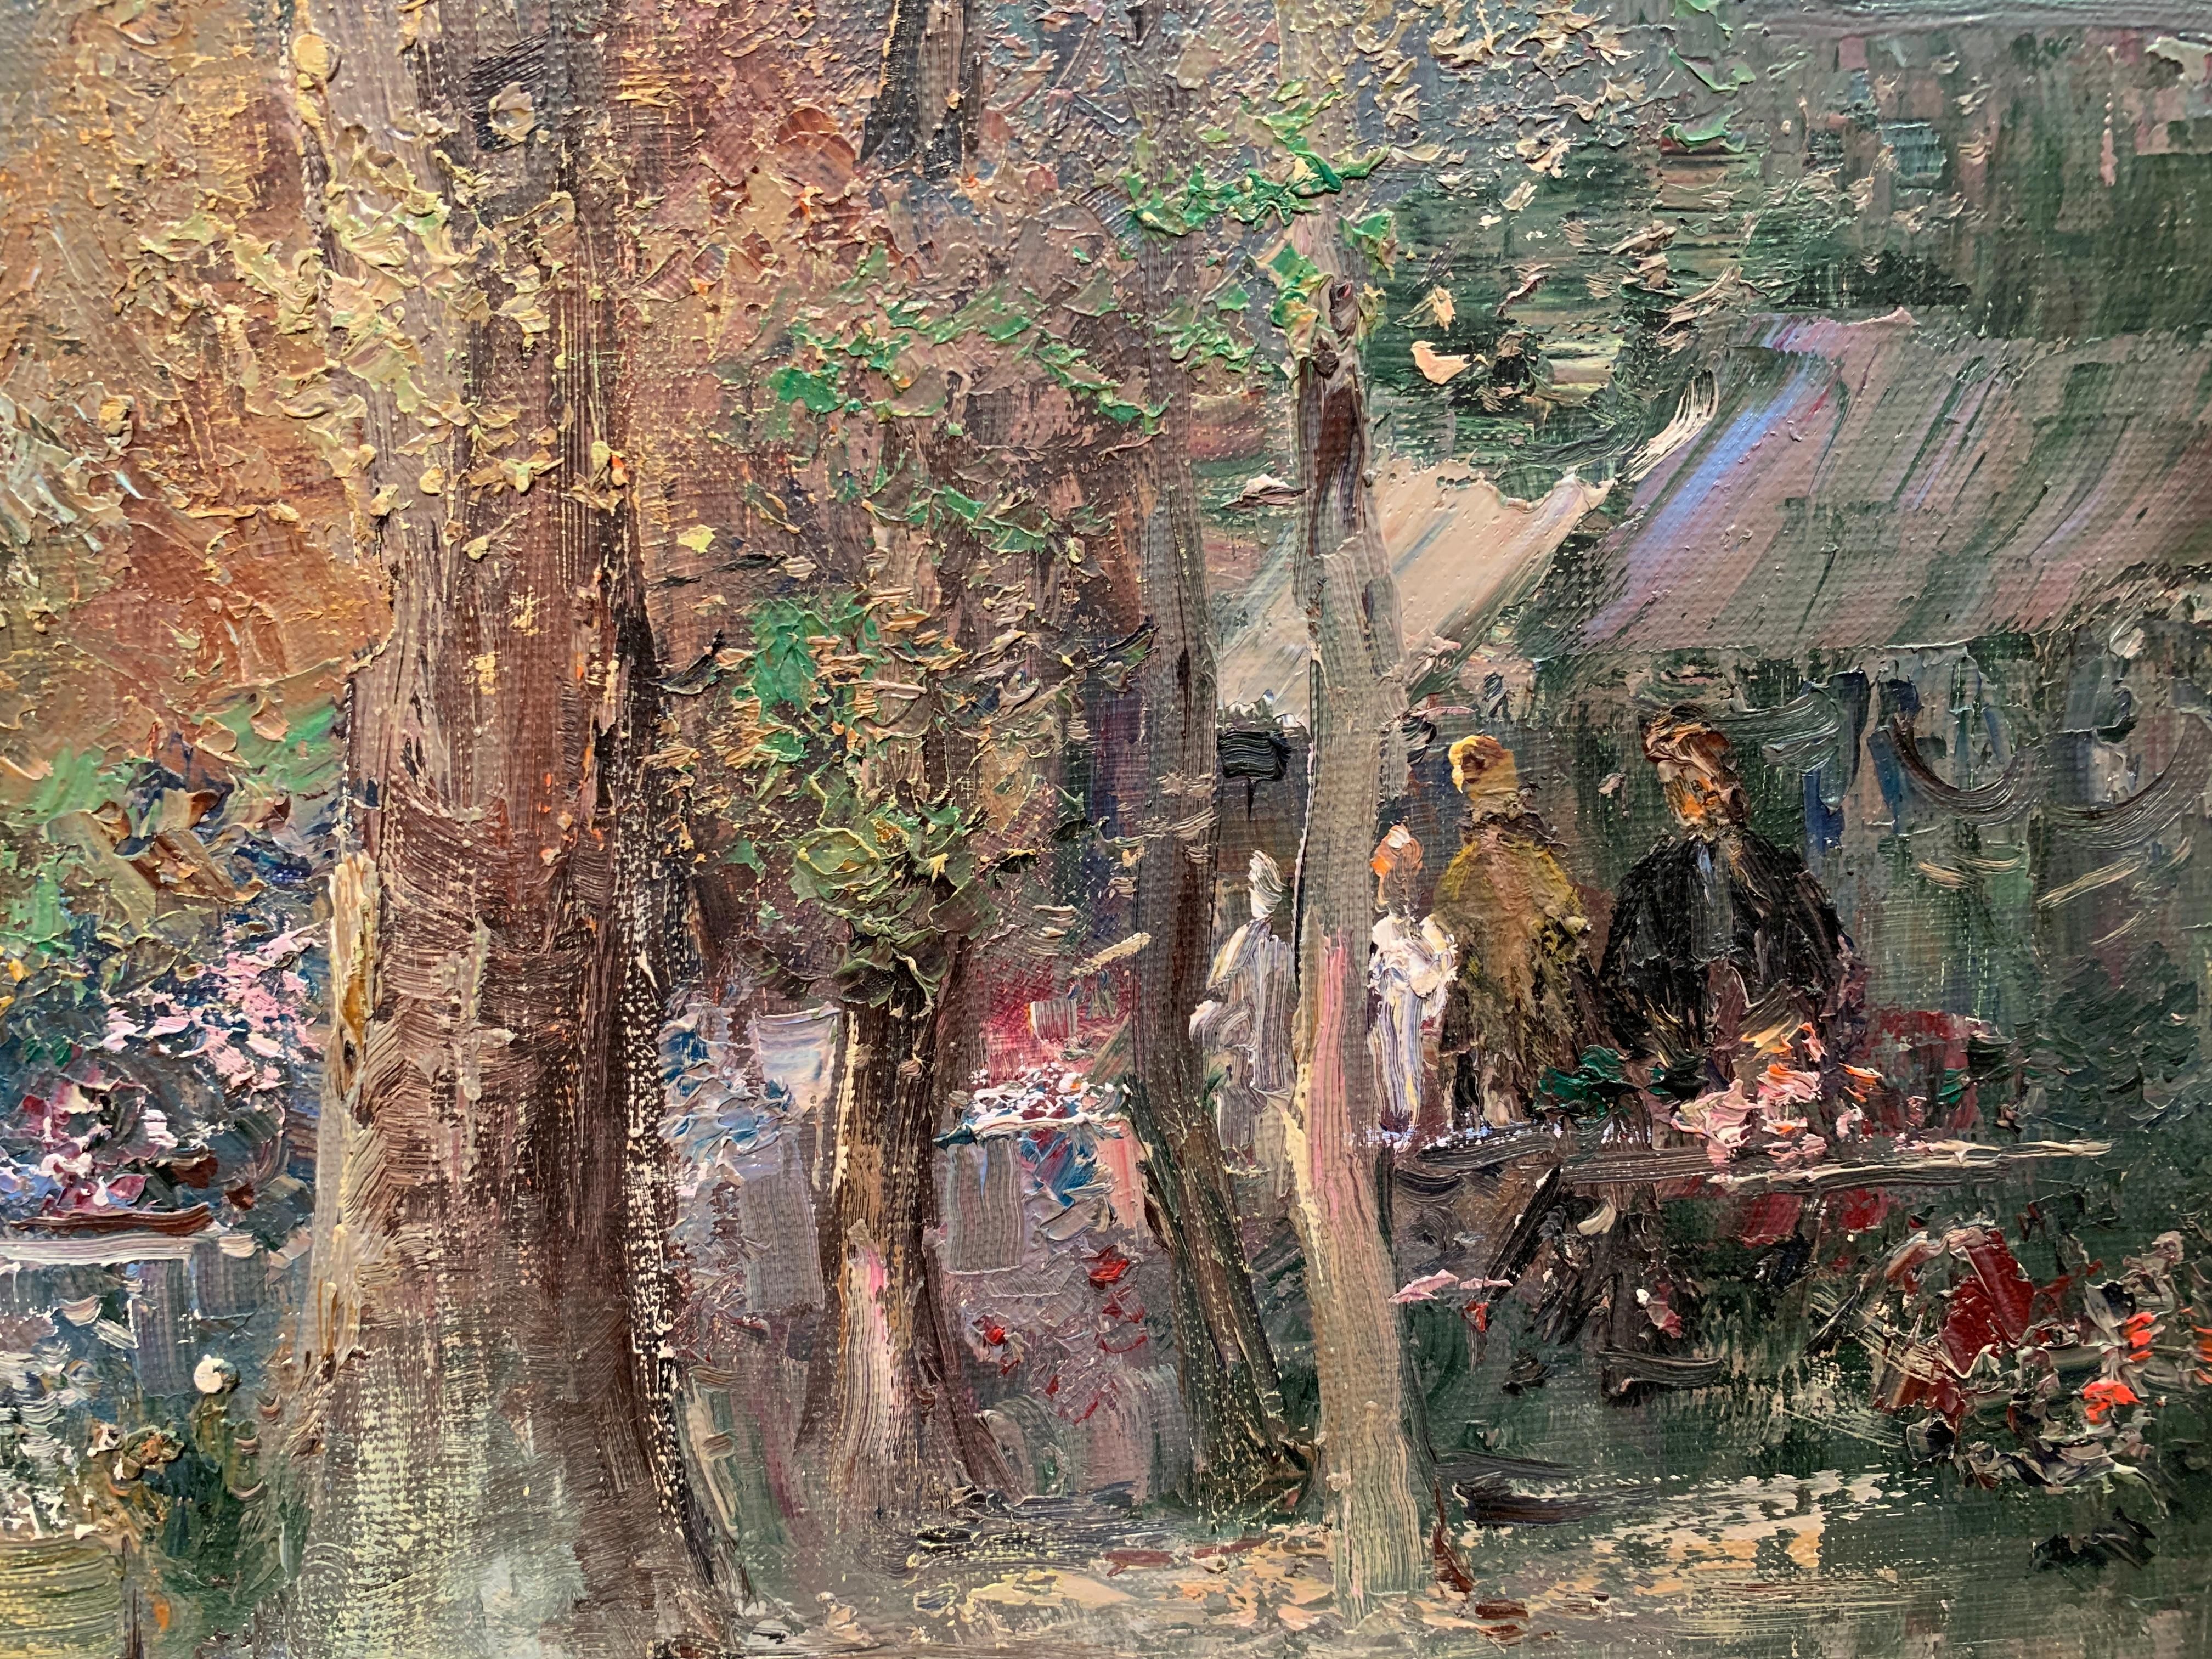 Willi Bauer ist ein zeitgenössischer deutscher Maler, der für seine impressionistisch anmutenden Darstellungen von Gartenfesten und ländlichen Dörfern bekannt ist. Seine Gemälde umfassen alle Aspekte des Lebens, von der Darstellung heiterer